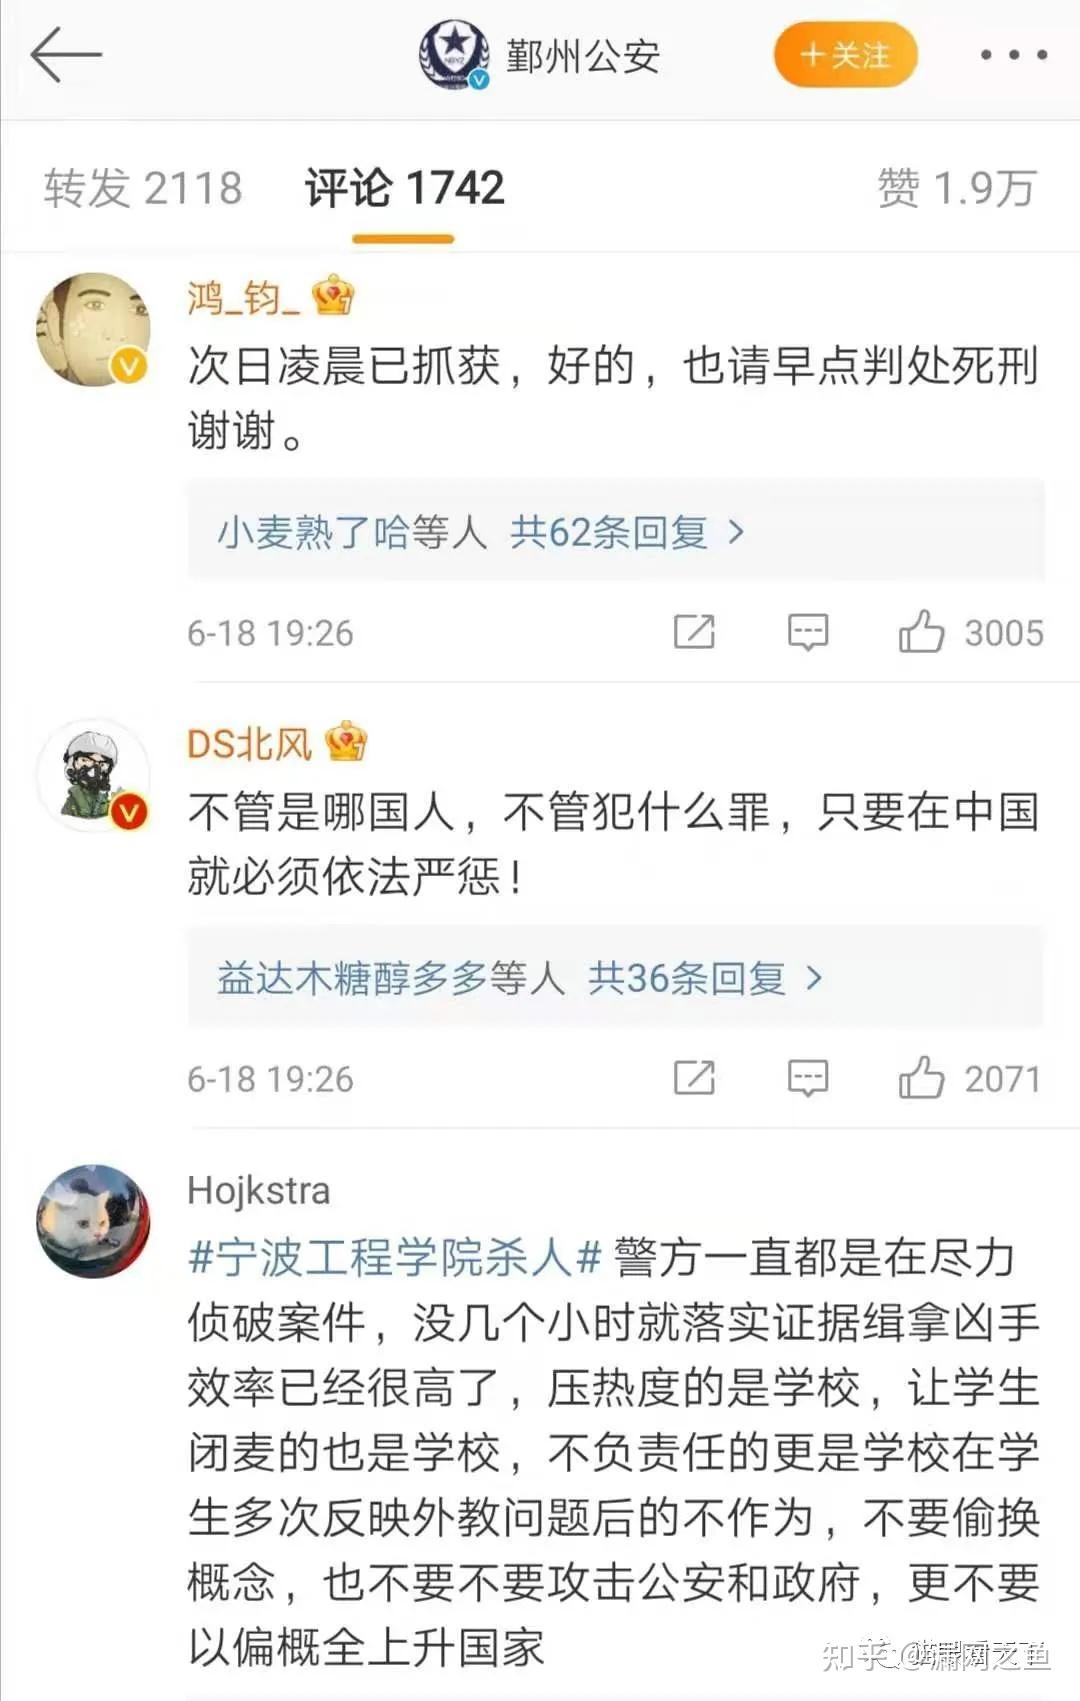 高一女生疑遭强奸杀害 被告拒不认罪无家属出庭-搜狐新闻